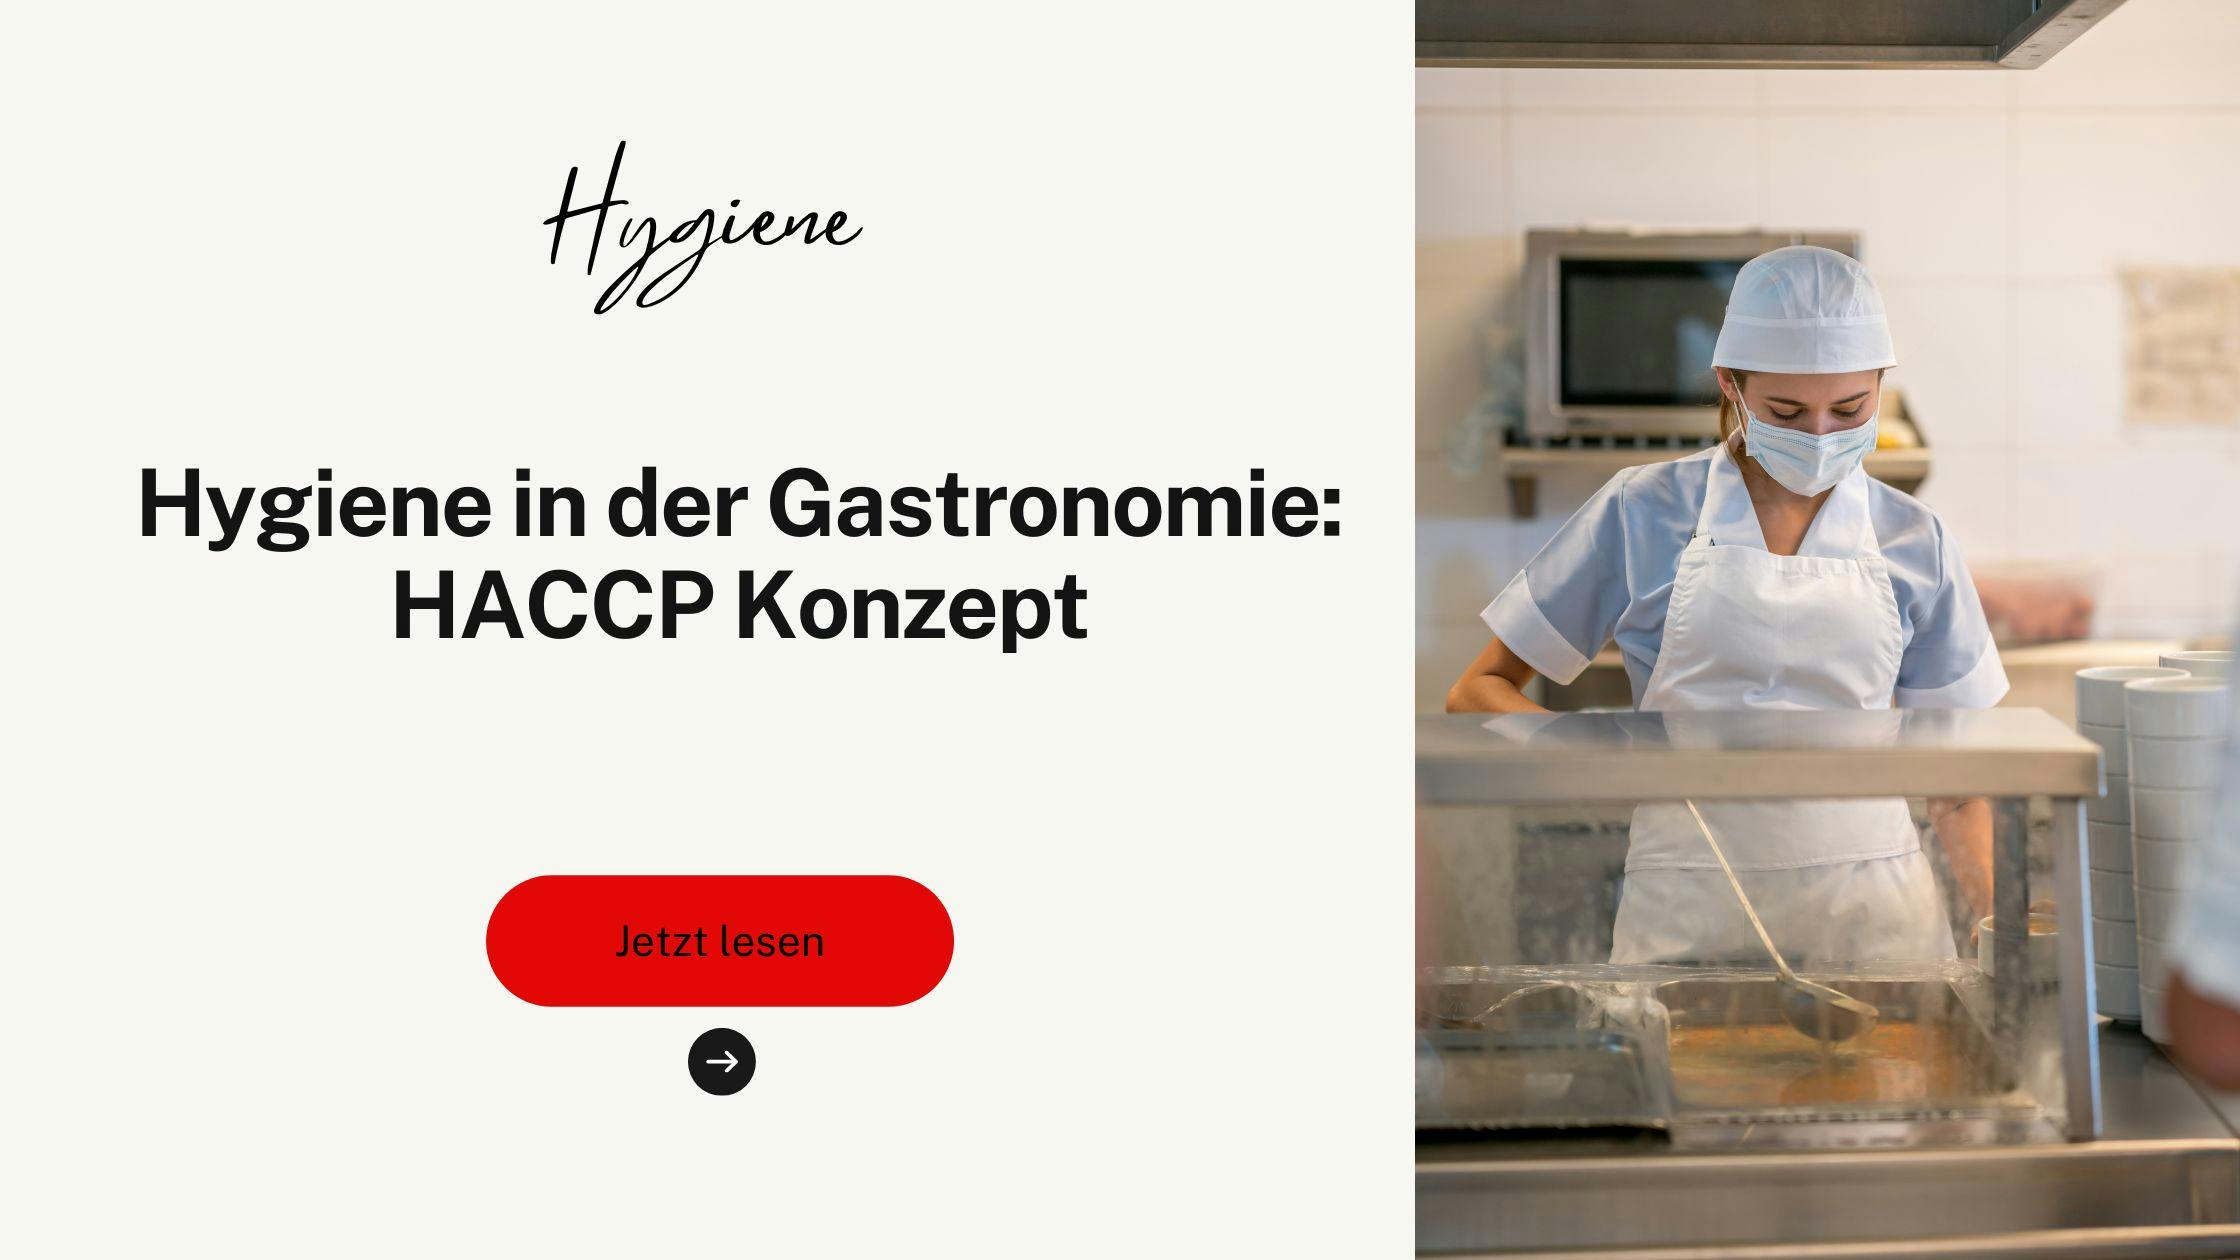 Hygiene in der Gastronomie: HACCP Konzept